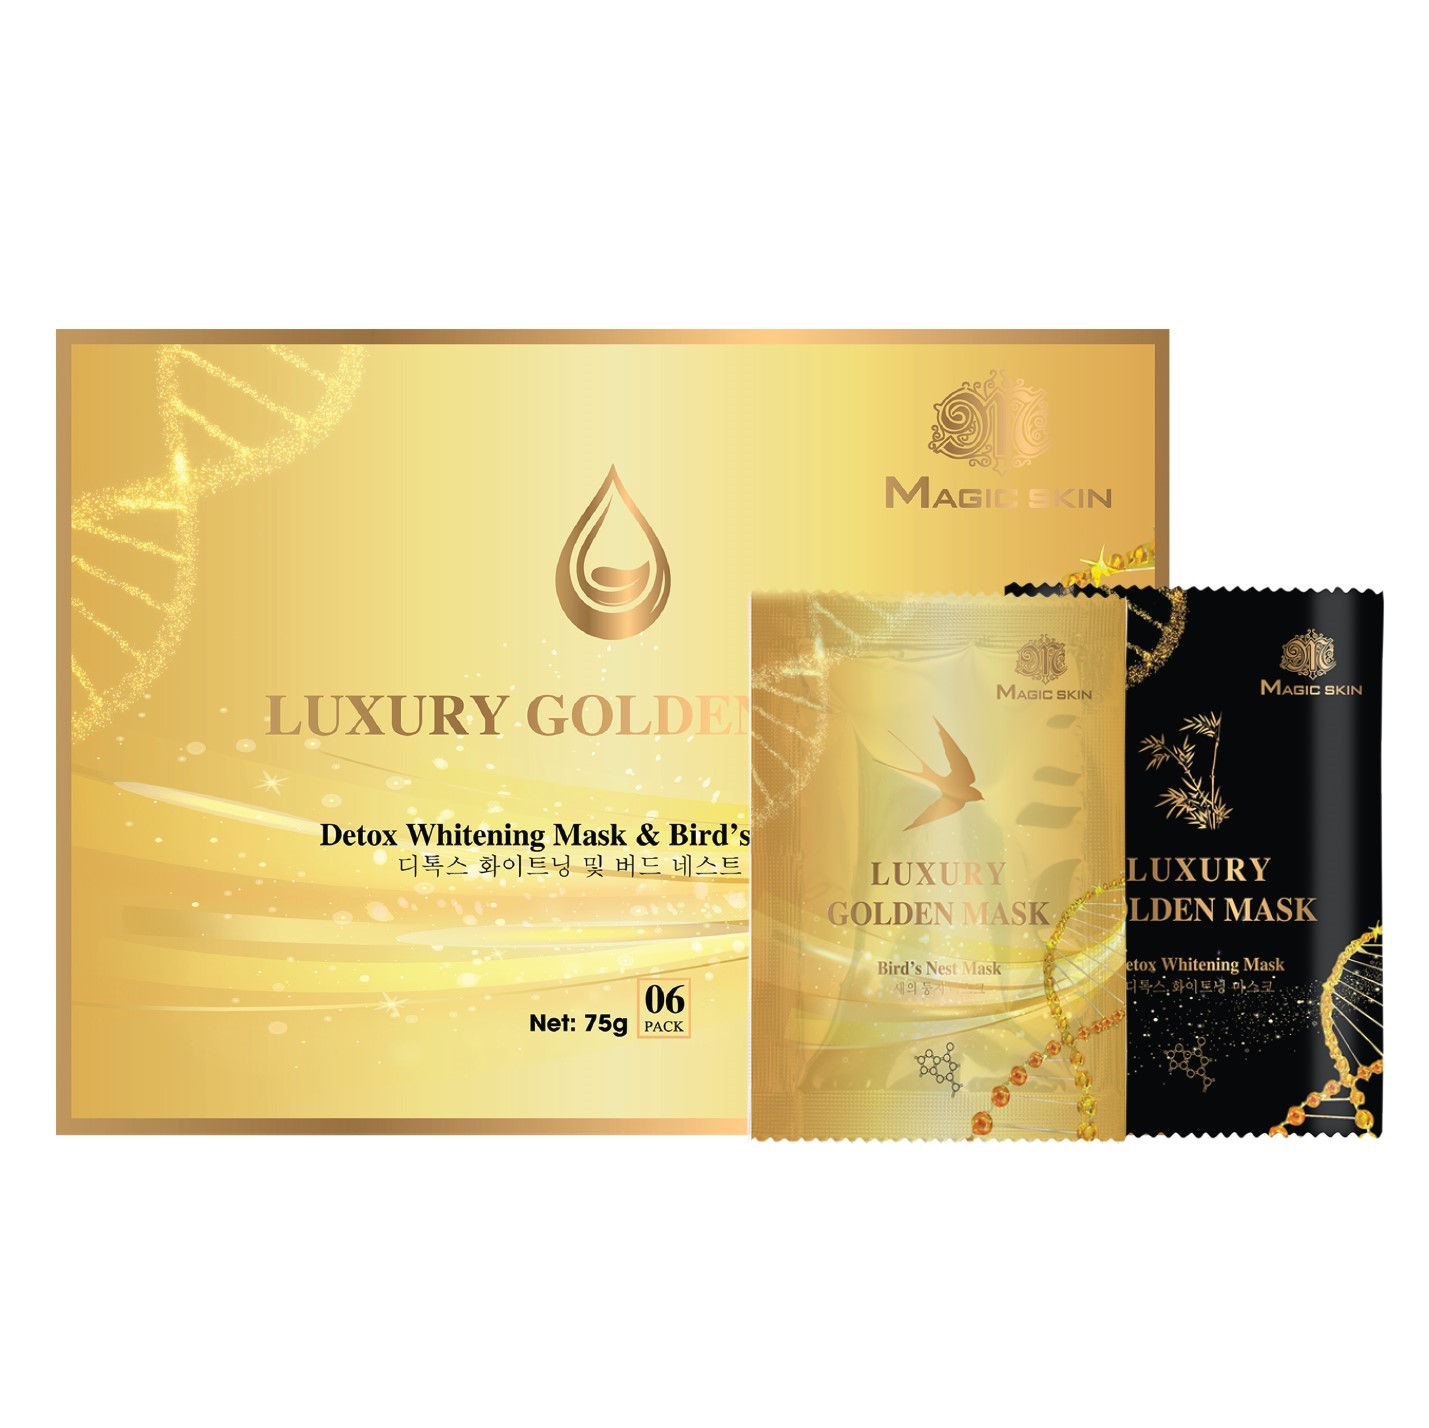 Ủ YẾN THẢI ĐỘC Luxury Golden Mask🎈  Mặt nạ dưỡng trắng hút chì Magic Skin 🎈 HỘP 6 gói ✔ CHÍNH HÃNG